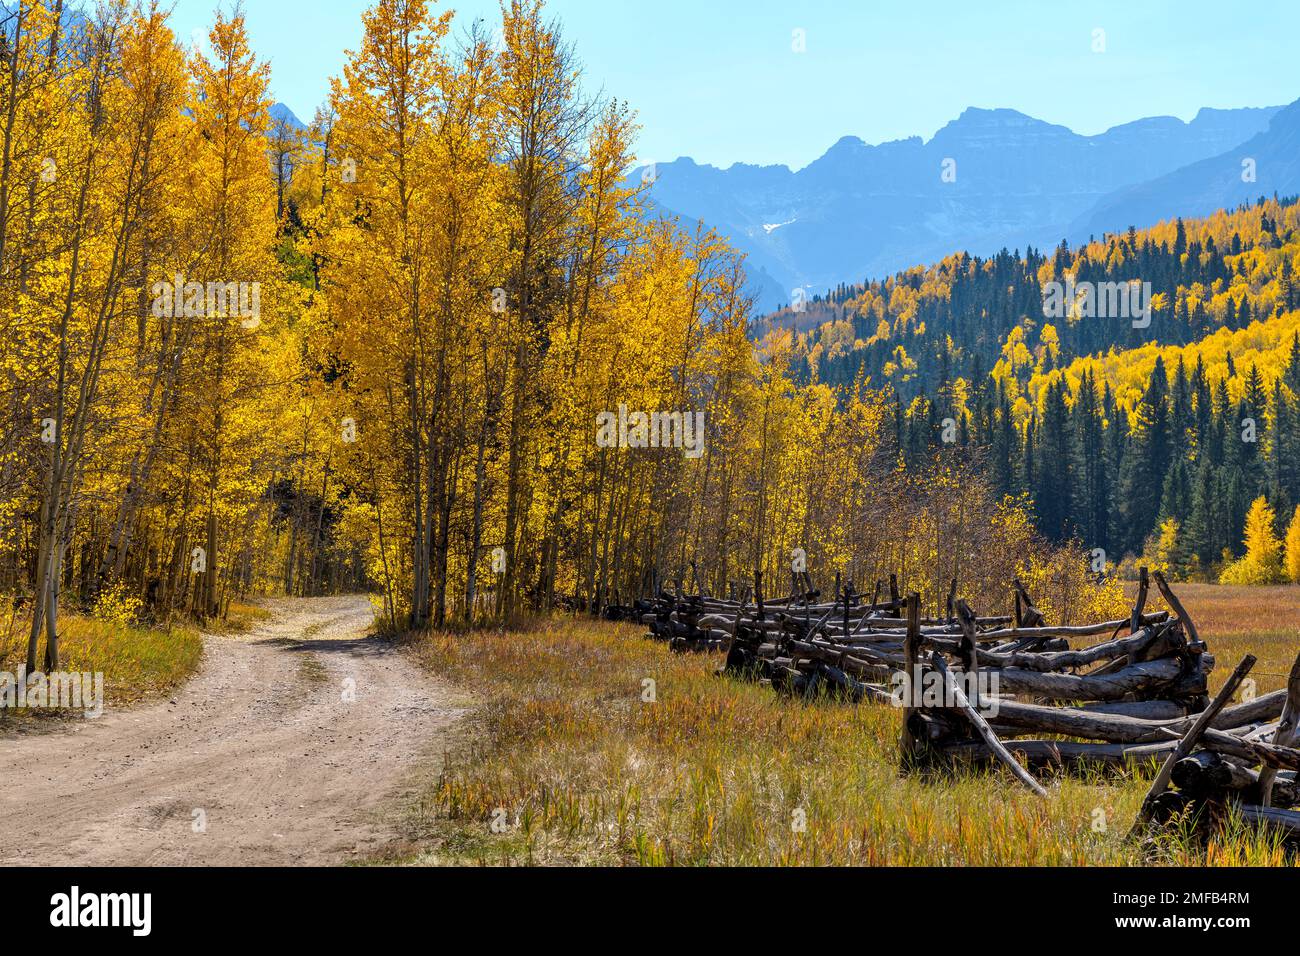 Vallée de l'automne - Une route de l'arrière-pays qui s'enroule dans une vallée colorée au pied de la chaîne des Sneffels, le jour d'automne ensoleillé, forêt nationale d'Uncompahgre, CO, États-Unis. Banque D'Images